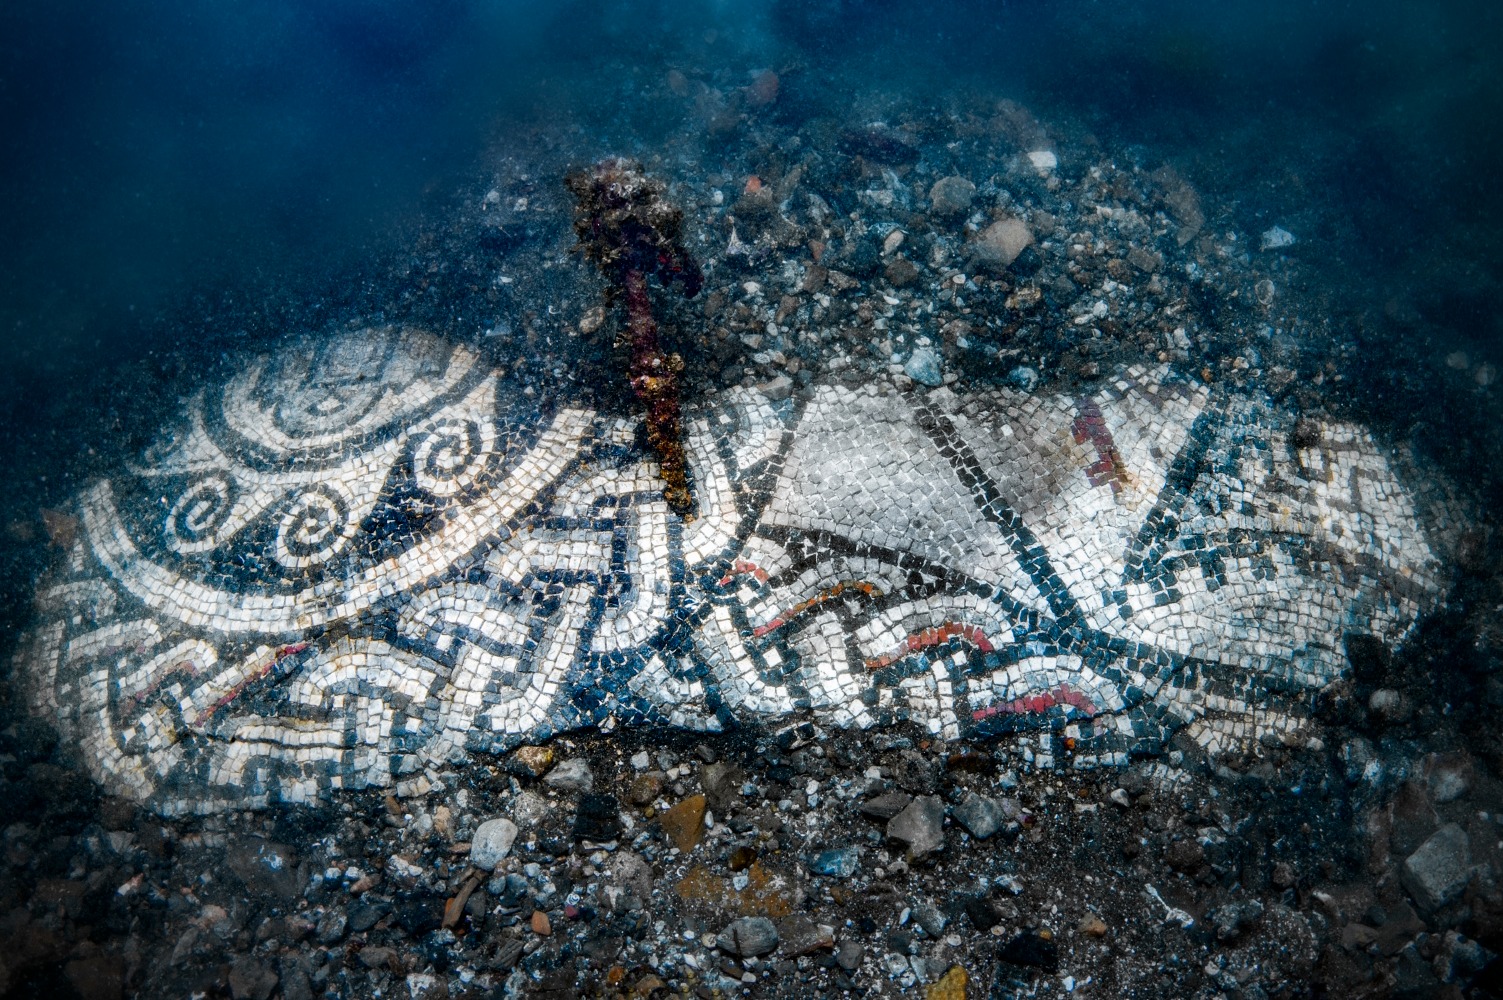 Scoperto a Baia un nuovo mosaico sommerso, con intreccio di linee azzurre